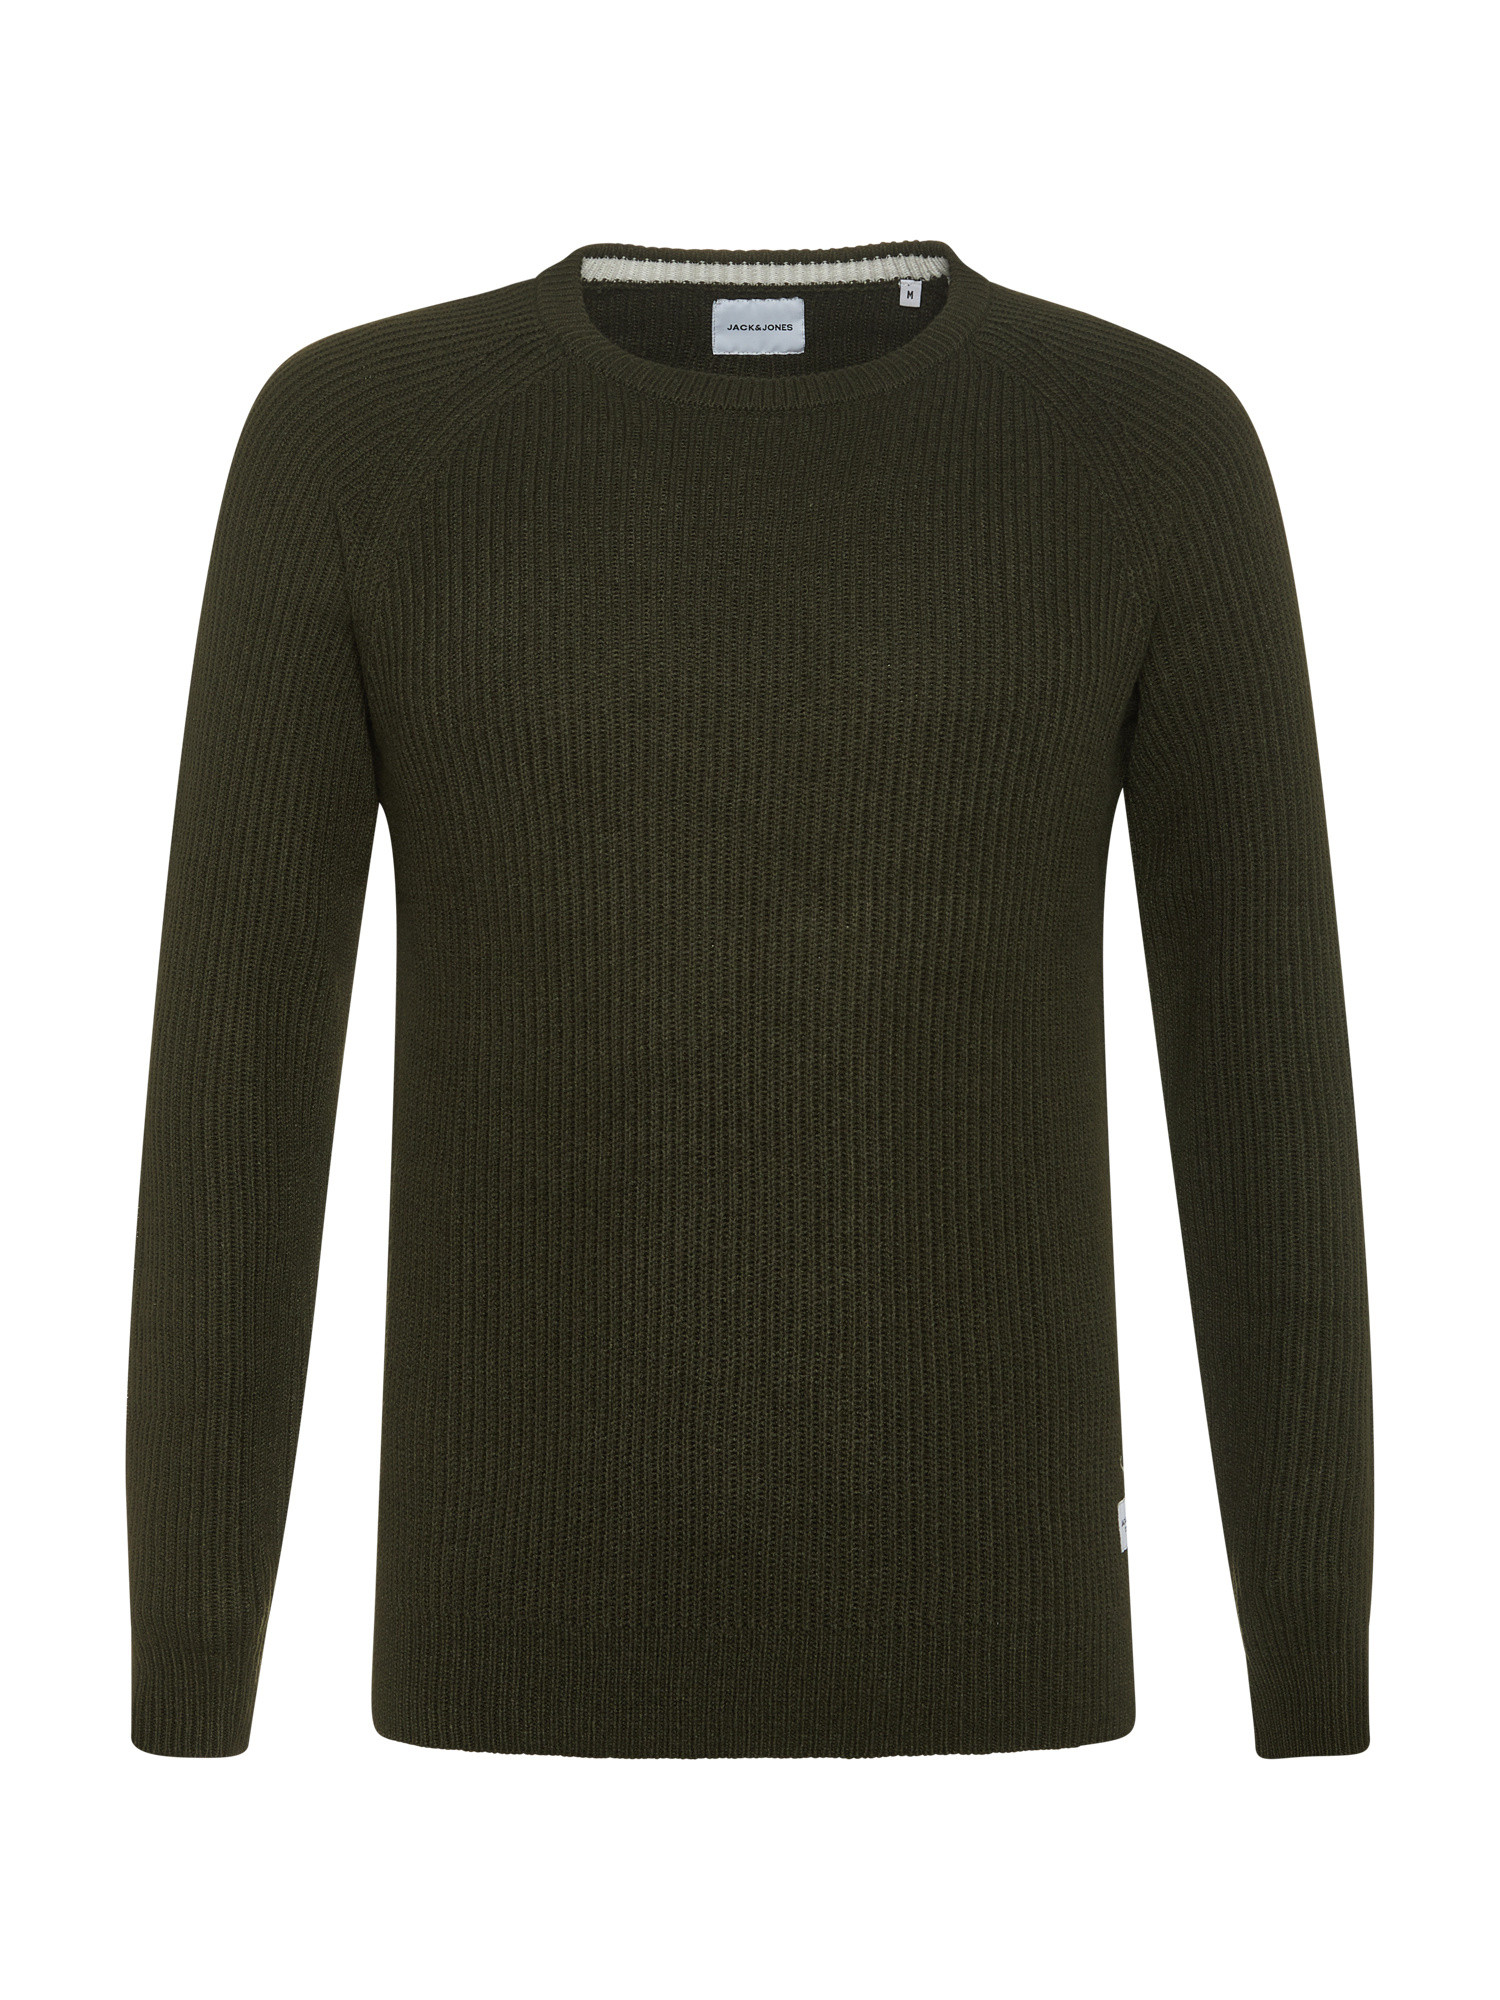 Вязаный свитер в рубчик Jack & Jones, темно-зеленый мужской свитер с круглым вырезом однотонный плотный вязаный кашемировый свитер из 100% чистой шерсти осень зима